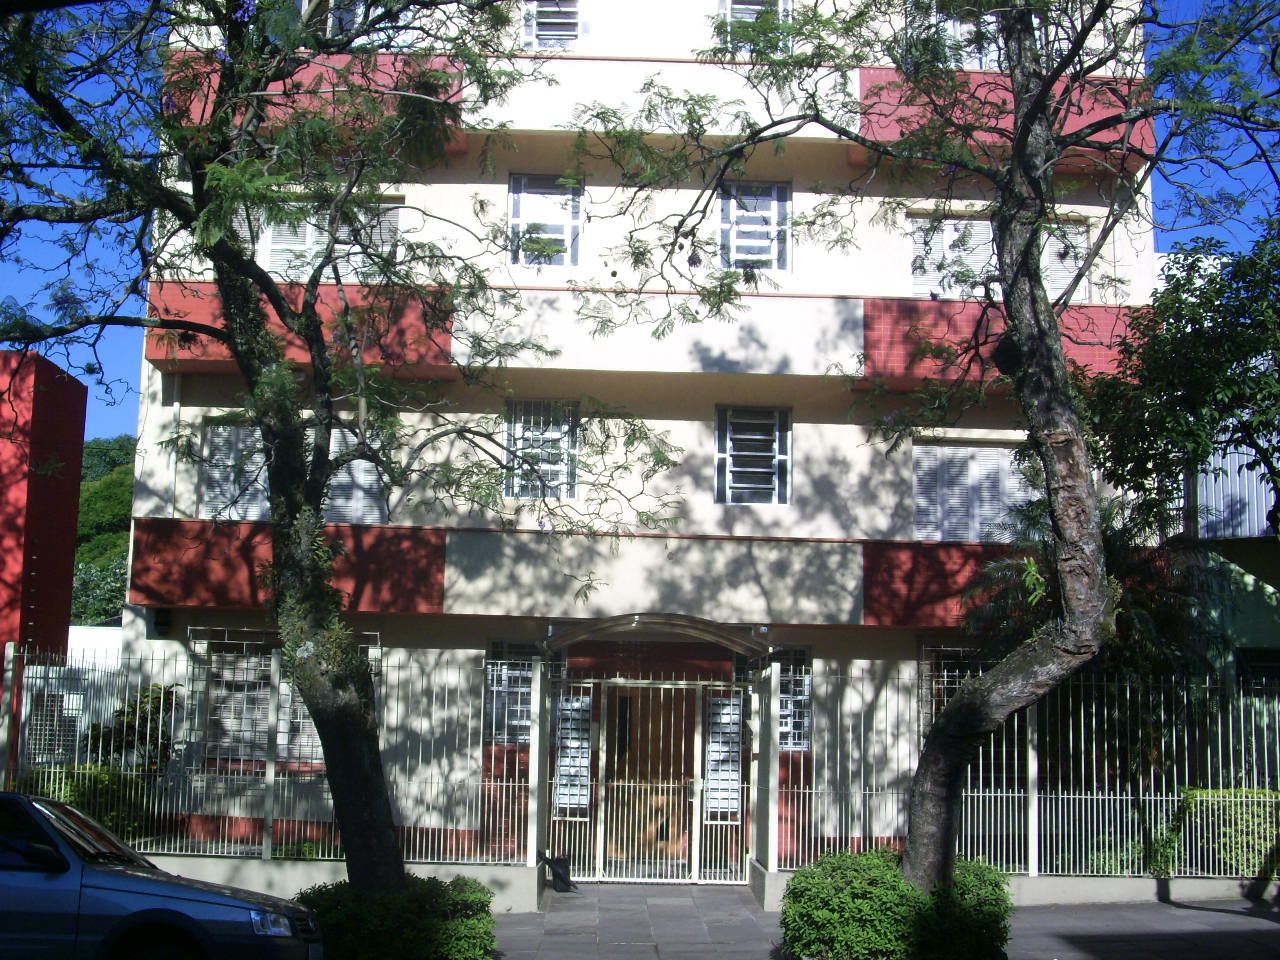 Apto para alugar  com  2 quartos no bairro FLORESTA em PORTO ALEGRE/RS